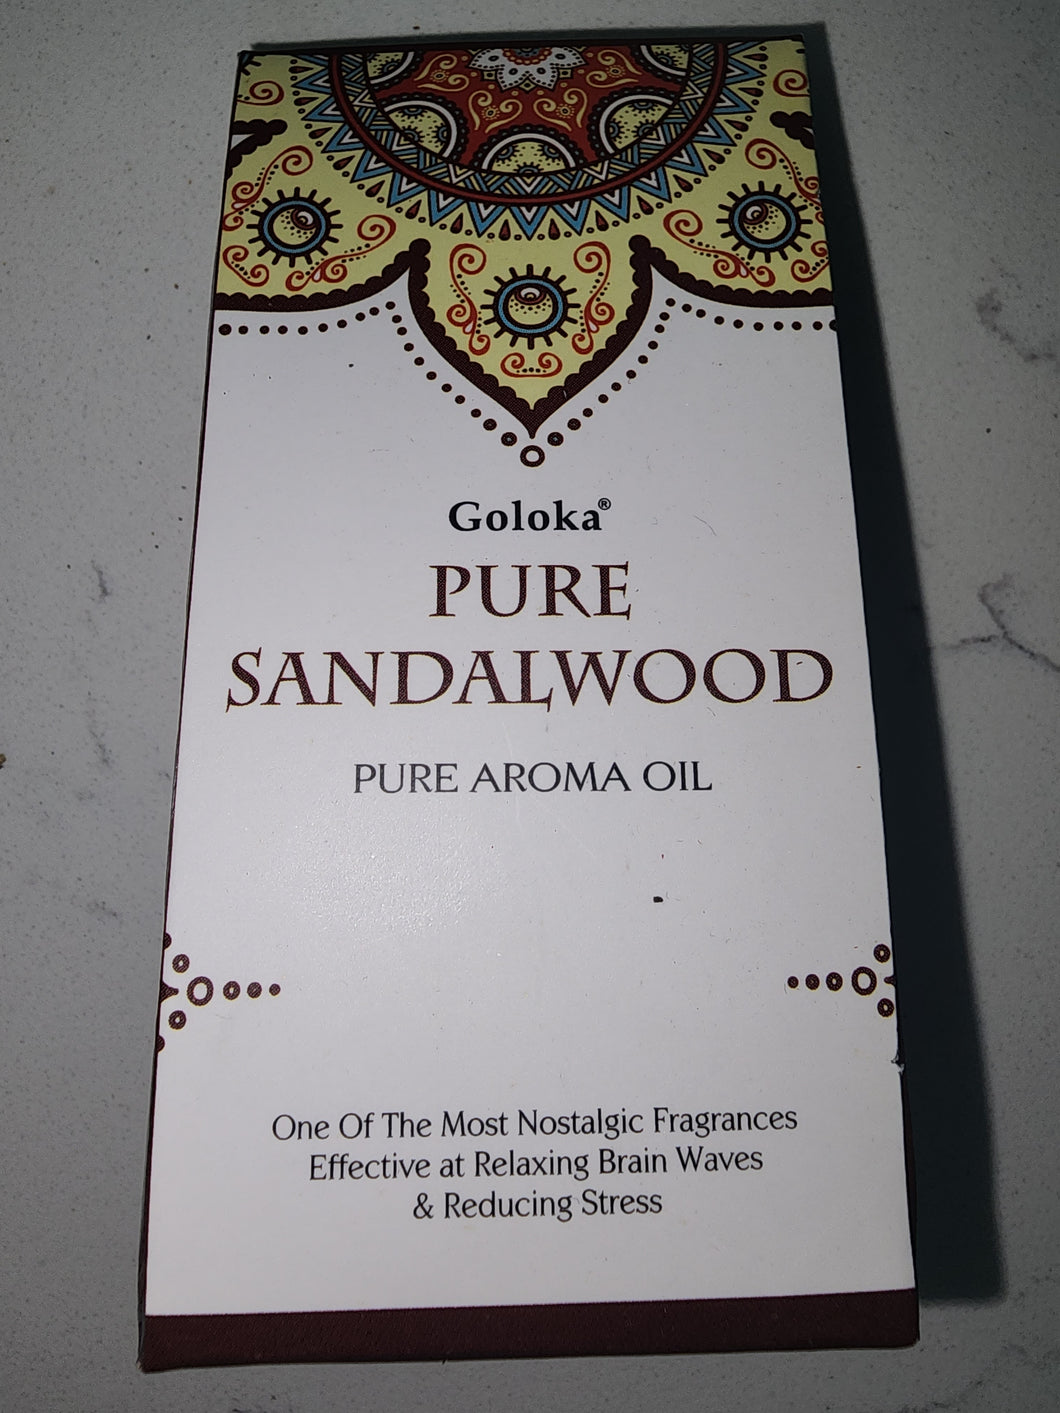 Pure Sandalwood Goloka Pure Aroma Oil